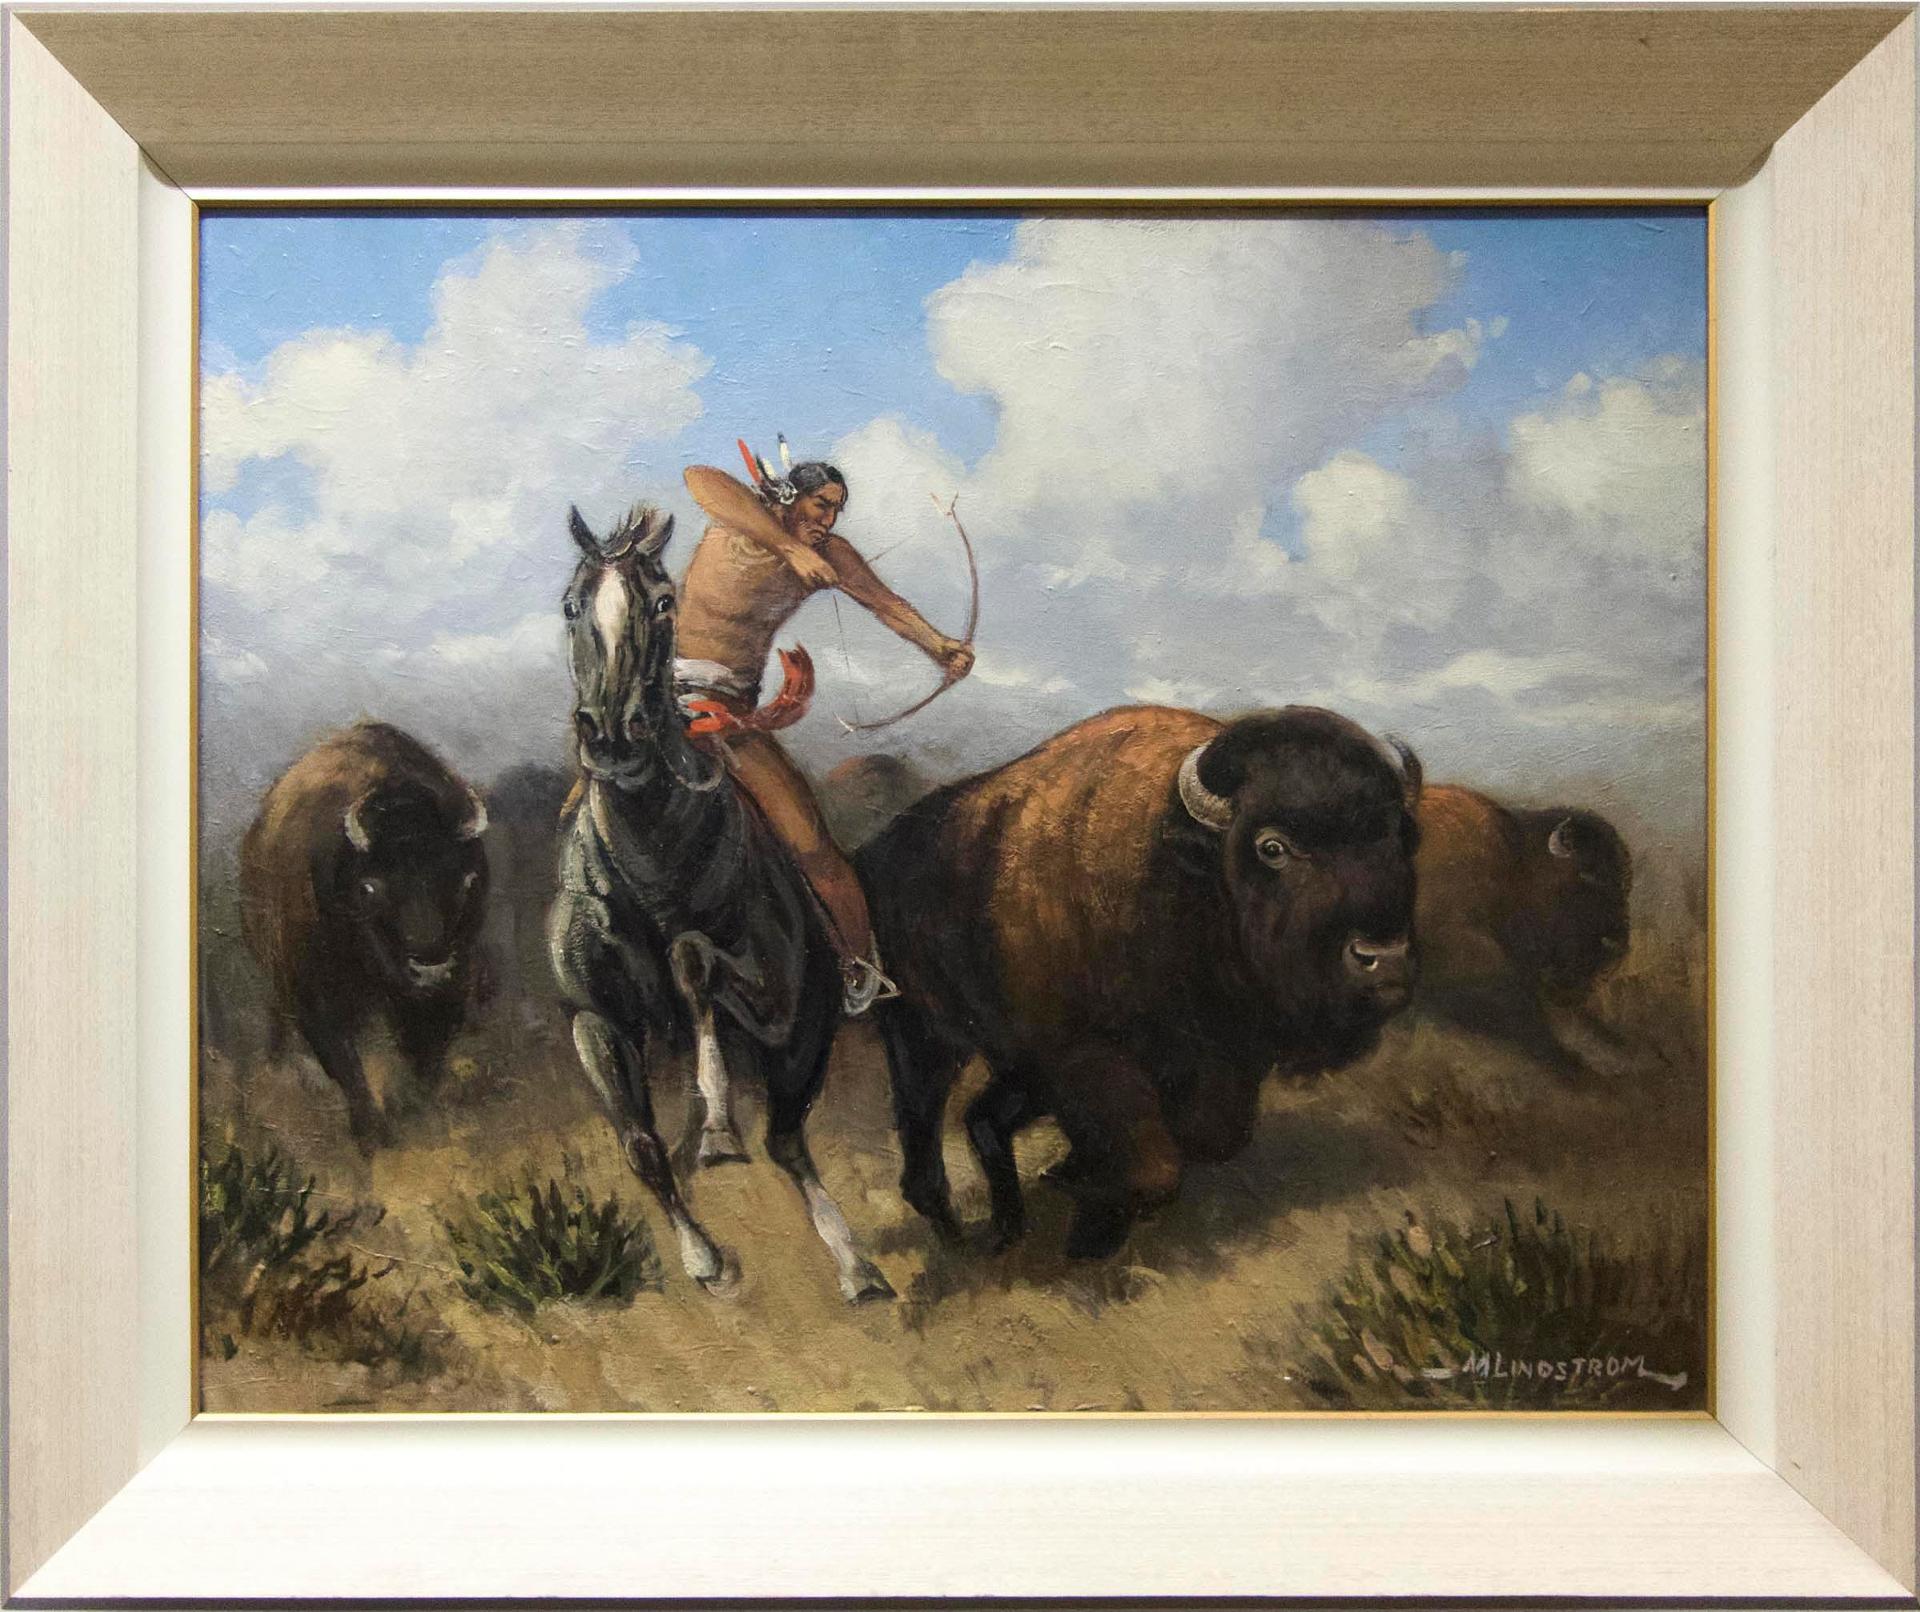 Matt Lindstrom (1890-1975) - Untitled (Buffalo Hunt)